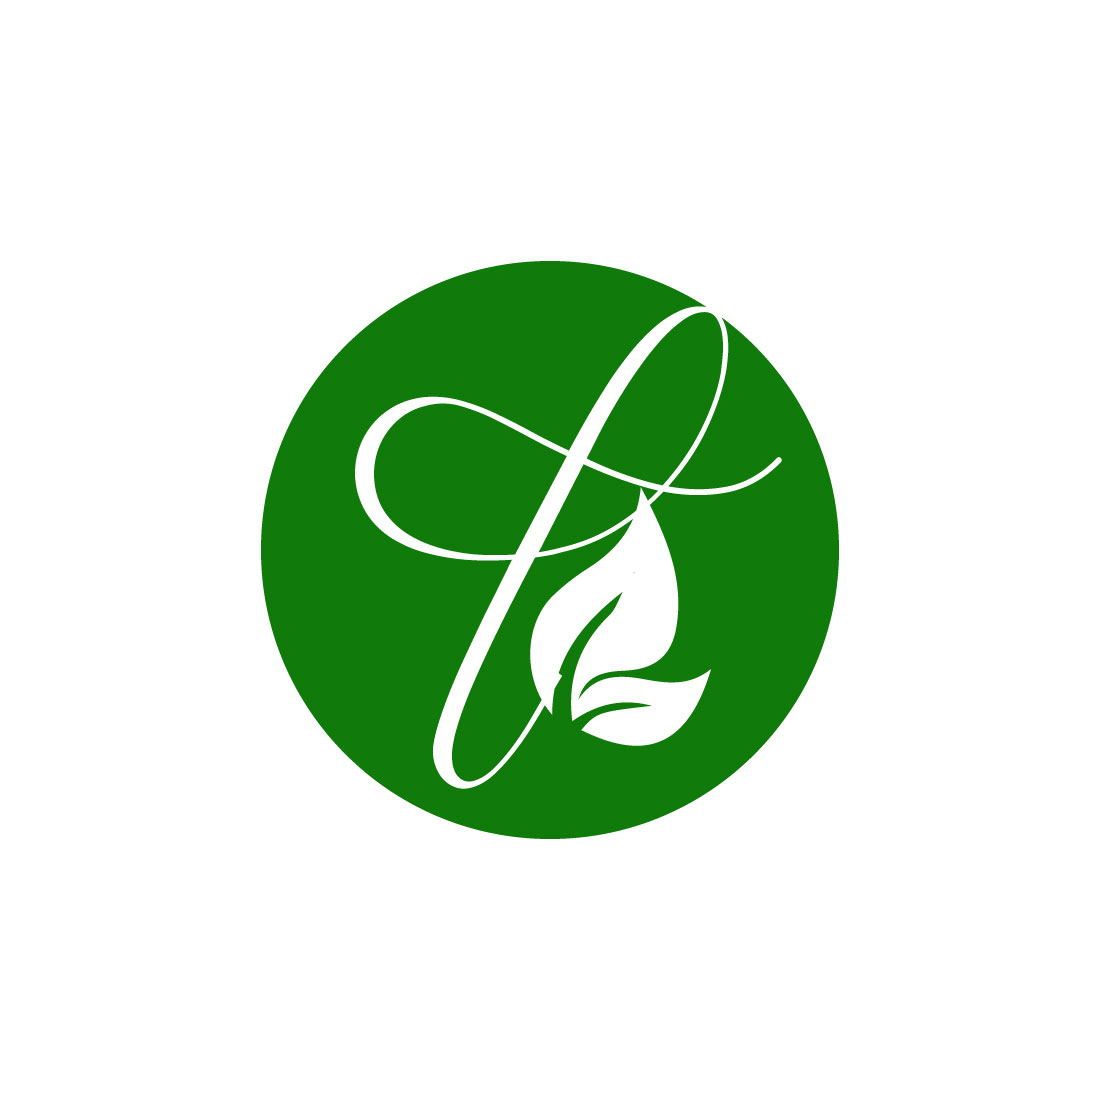 Free botanical logo preview image.